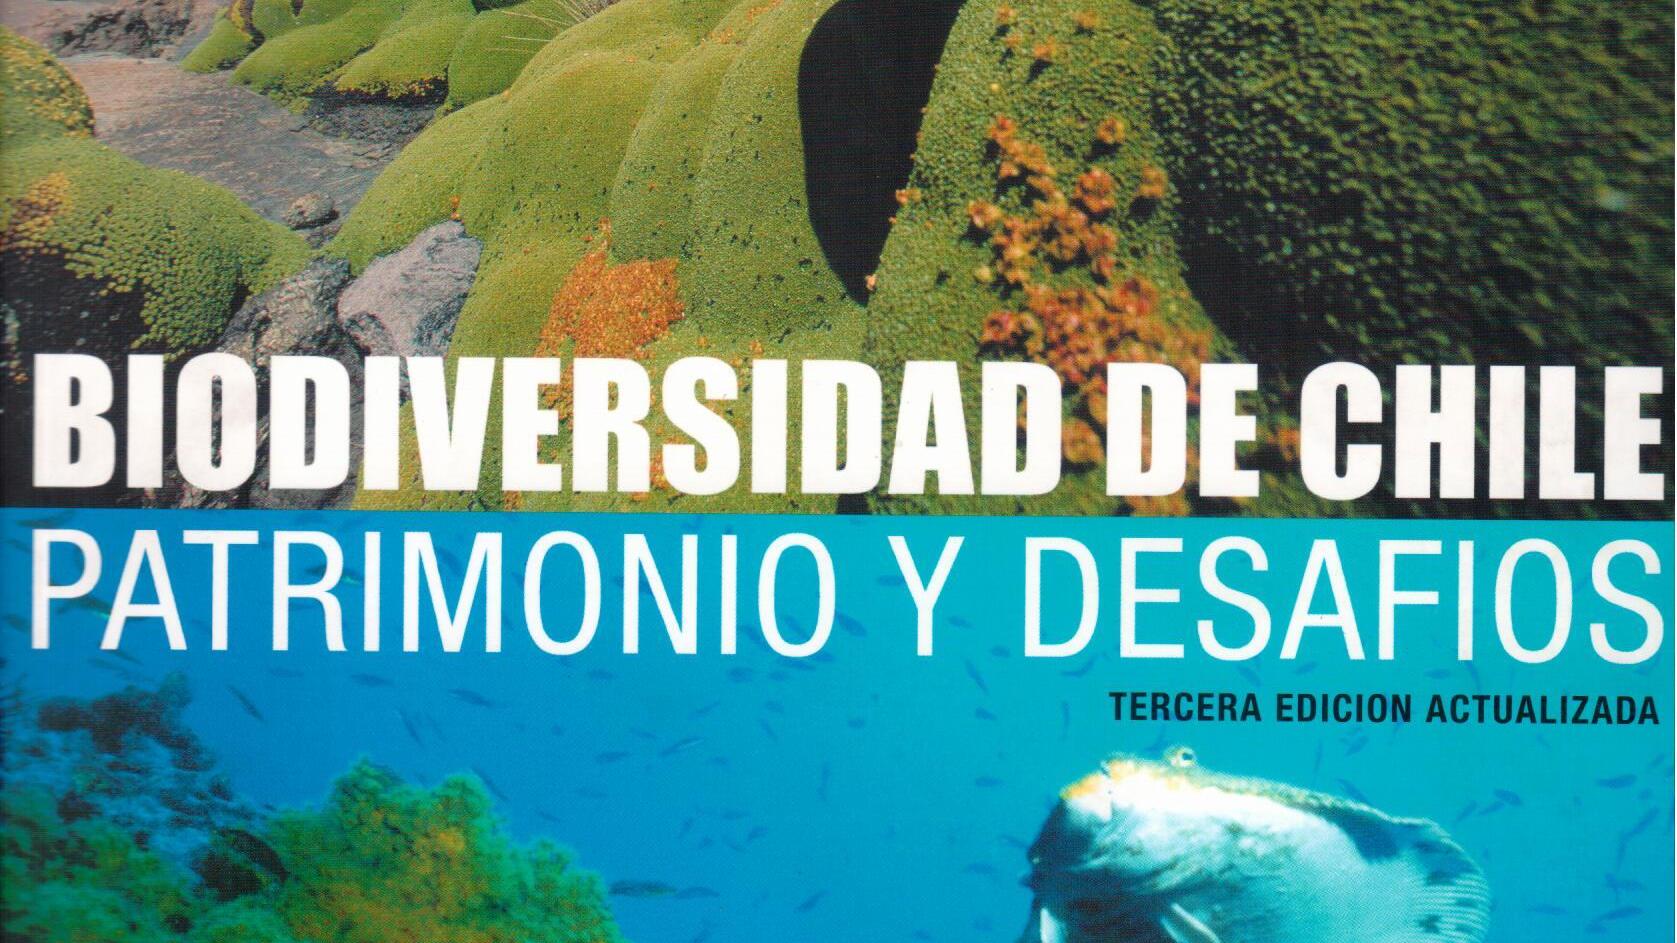 En el siguiente libro podemos aproximarnos hacia lo que conocemos y desconocemos de la biodiversidad chilena, inluyendo la diversidad genética y de ecosistemas terrestres, marinos y dulceacuícola, aportando al conocimiento y valoración del patrimonio.